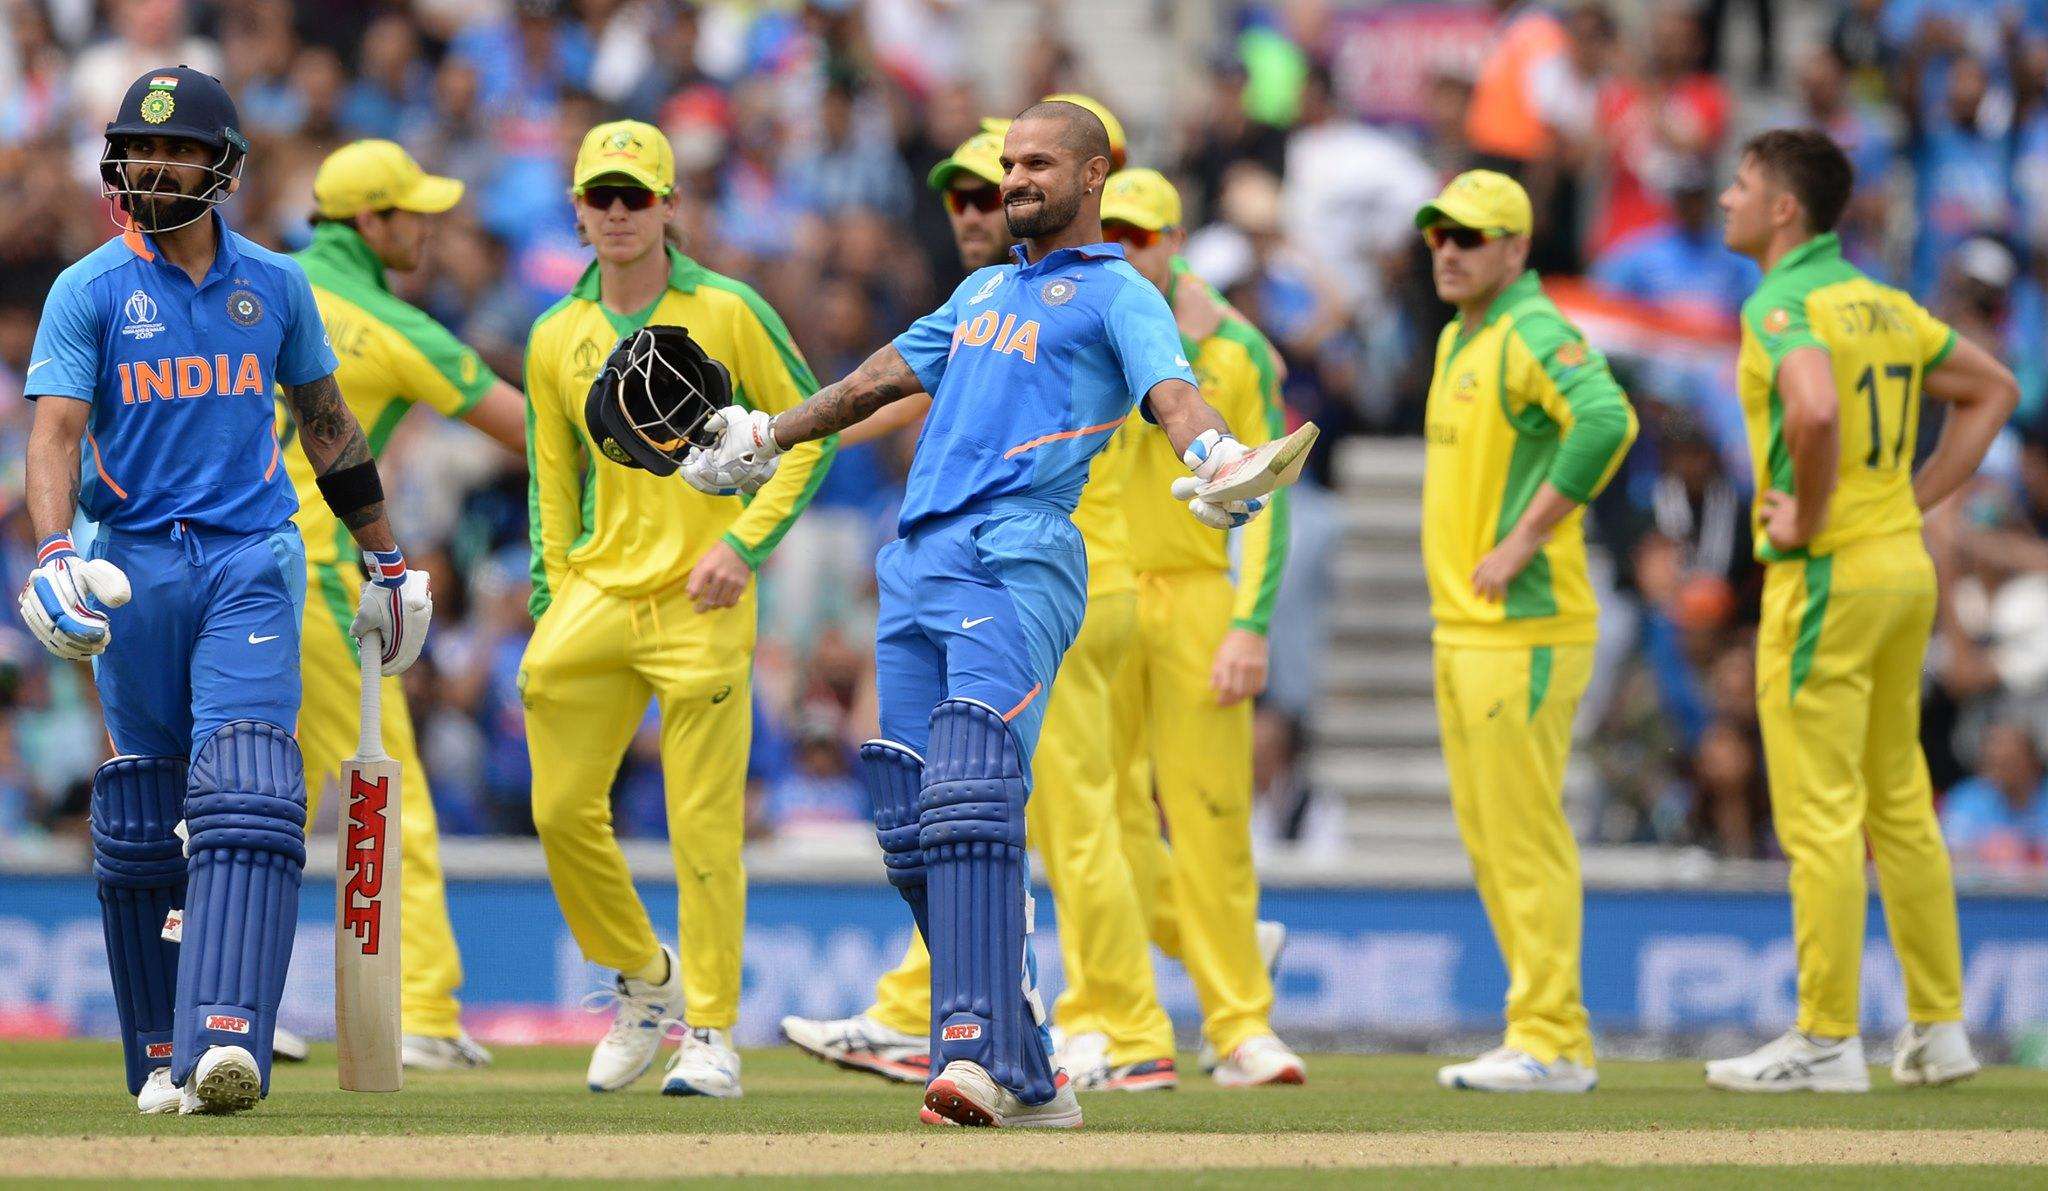 ऑस्ट्रेलिया के खिलाफ भारत का पिछले पांच मैचों का रिकॉर्ड